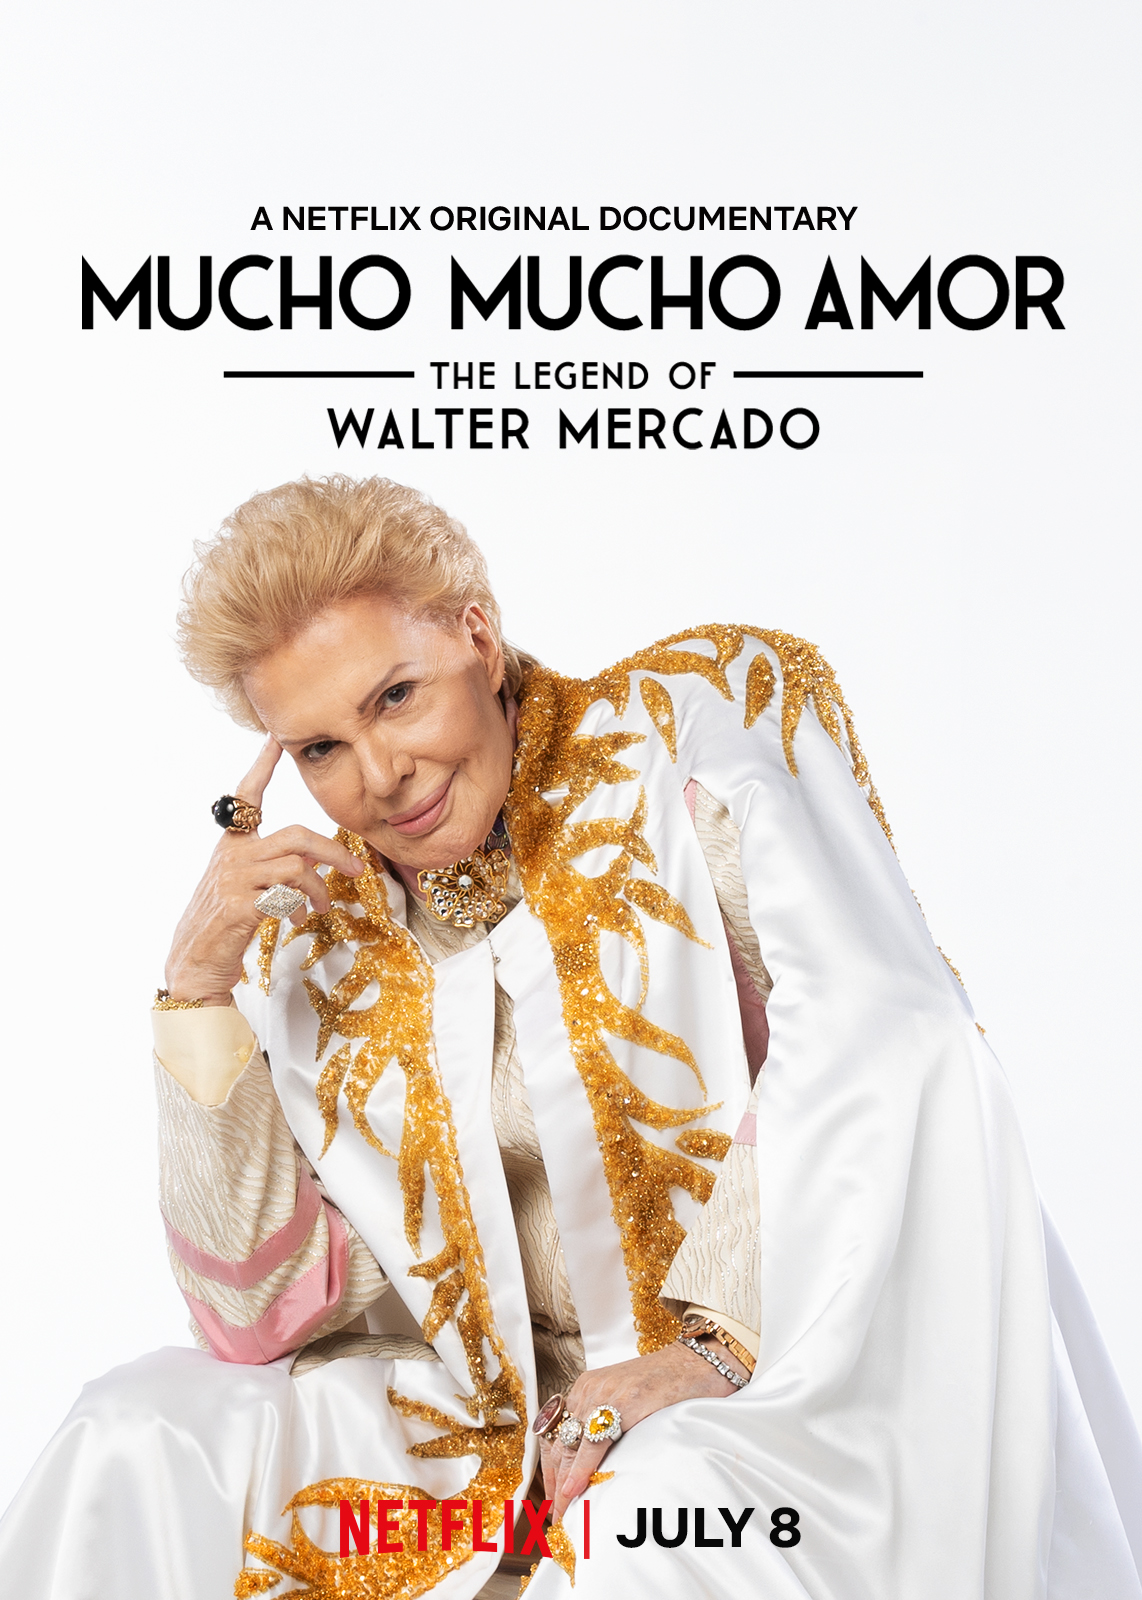 دانلود مستند Mucho Mucho Amor: The Legend of Walter Mercado 2020 موچو موچو آمور: افسانه والتر مرکادو با زیرنویس فارسی چسبیده